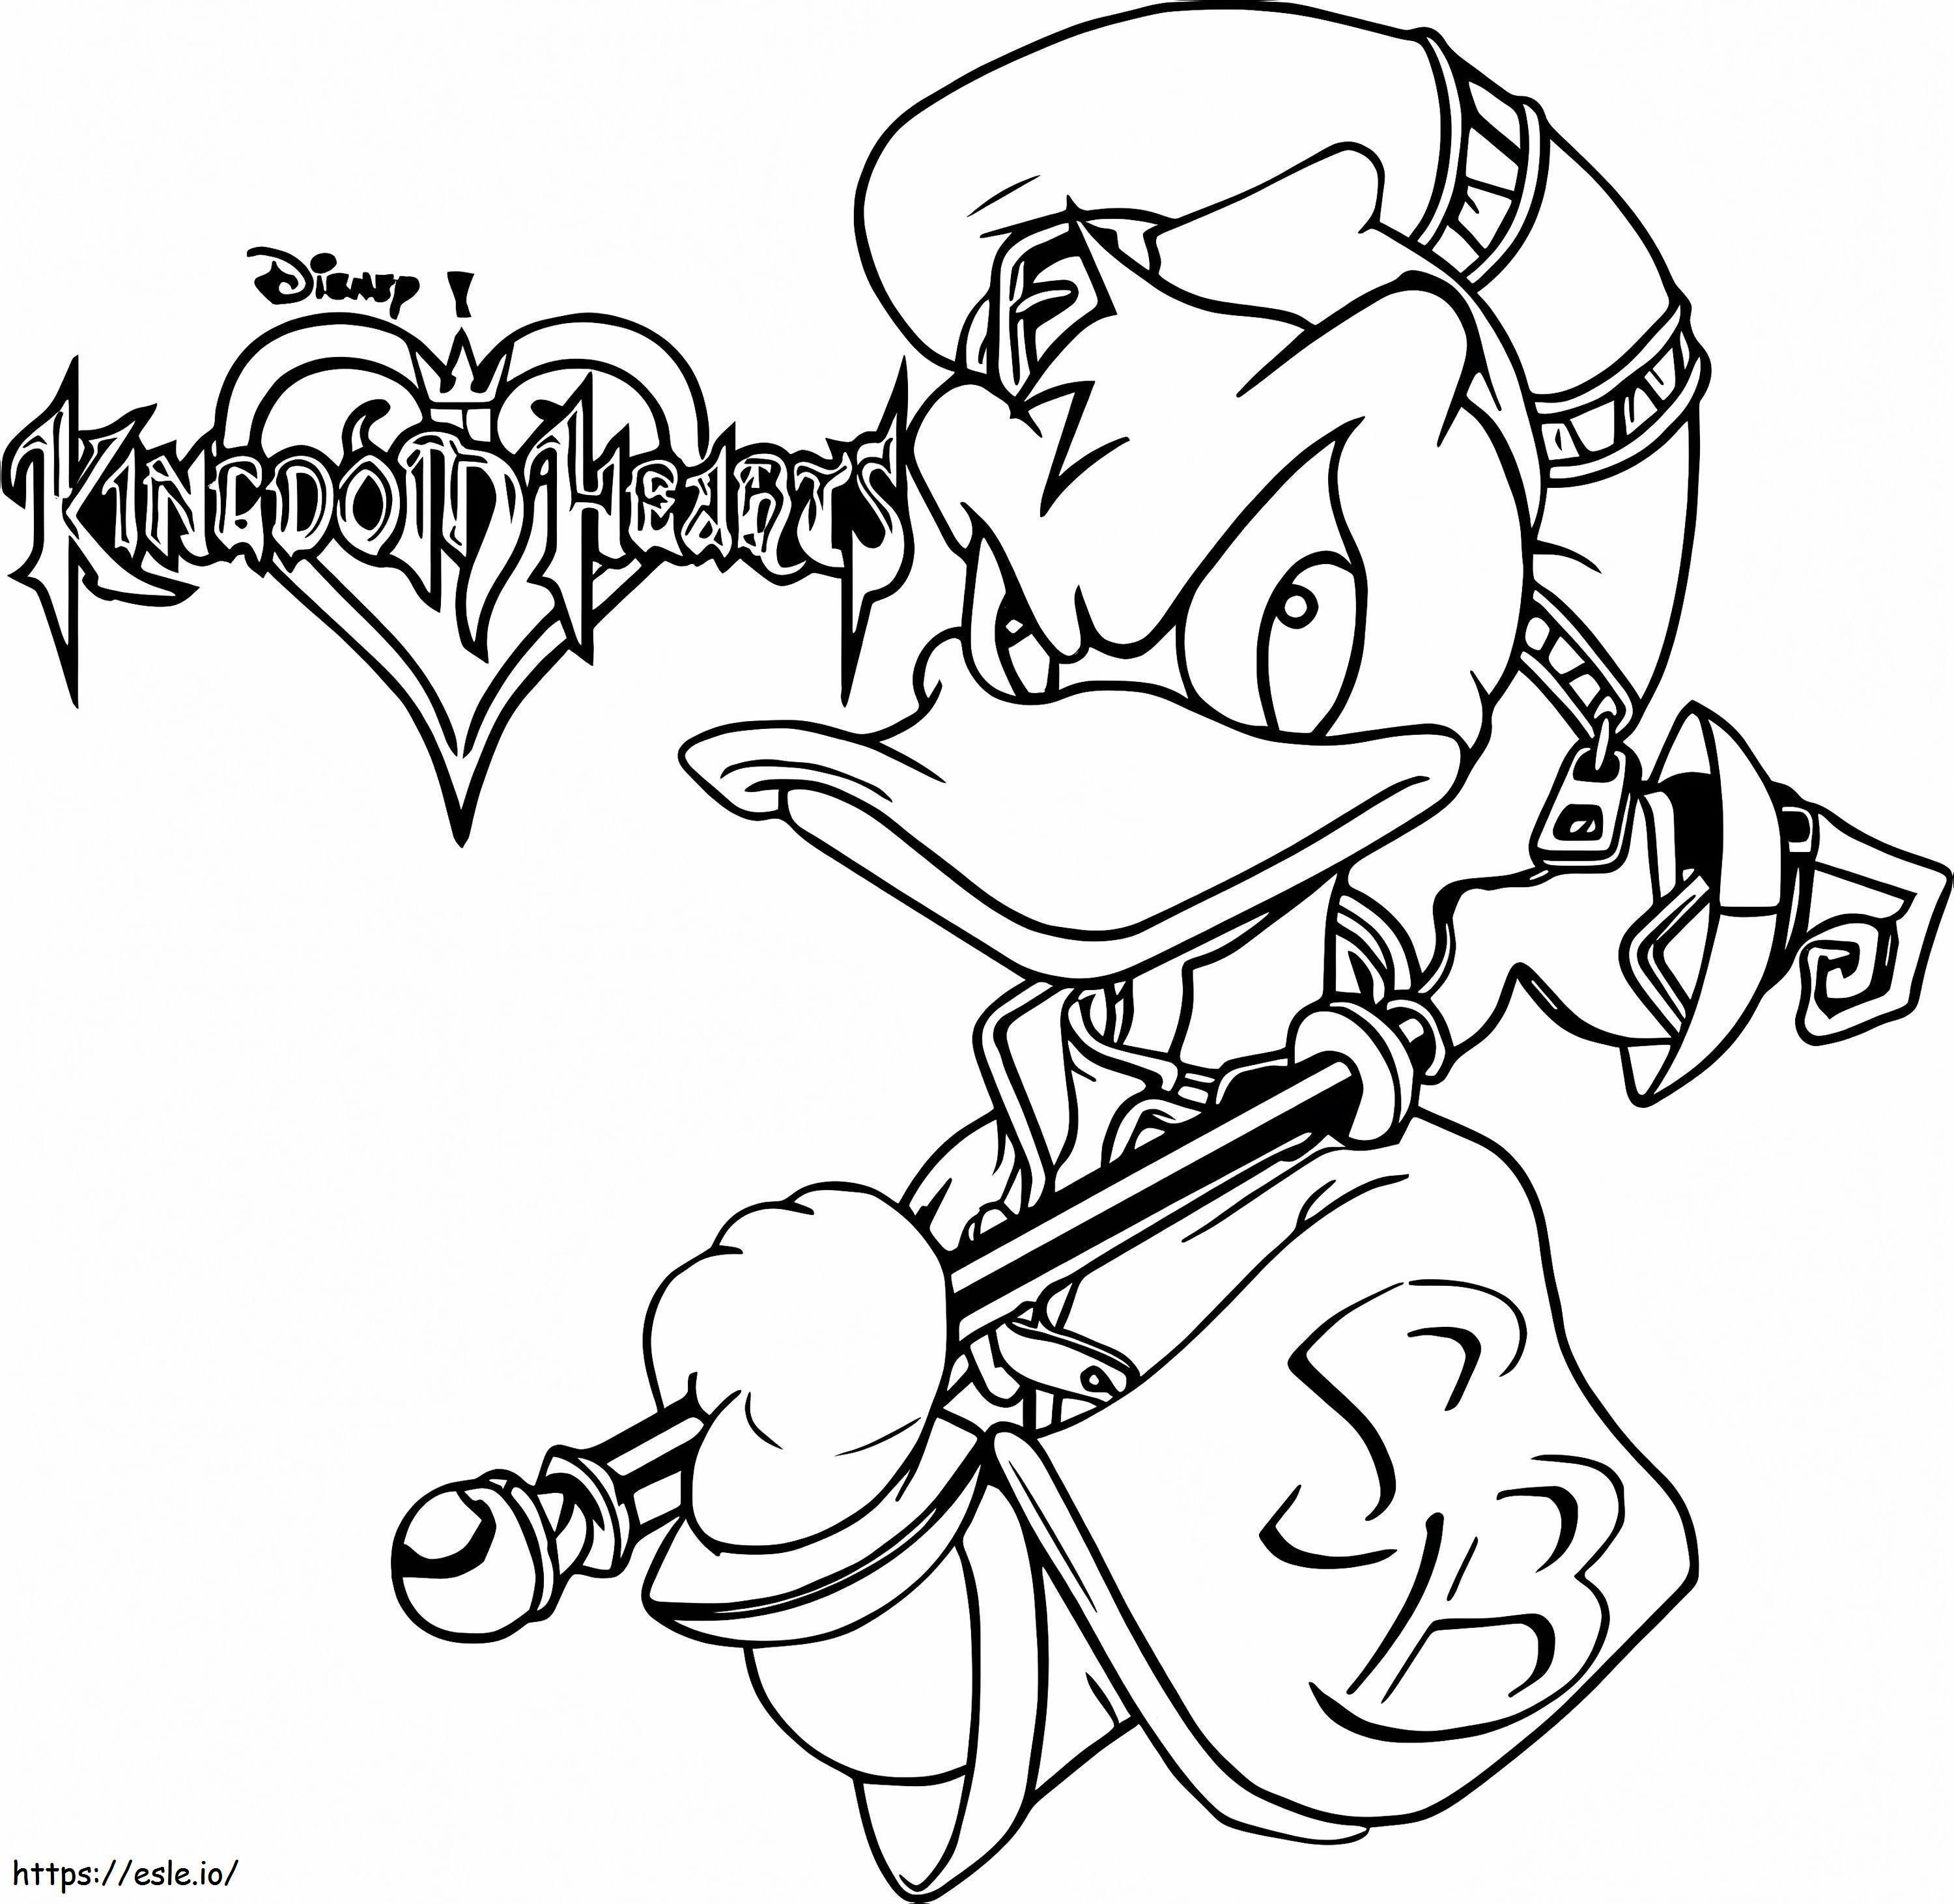 Donlad Duck aus Kingdom Hearts ausmalbilder